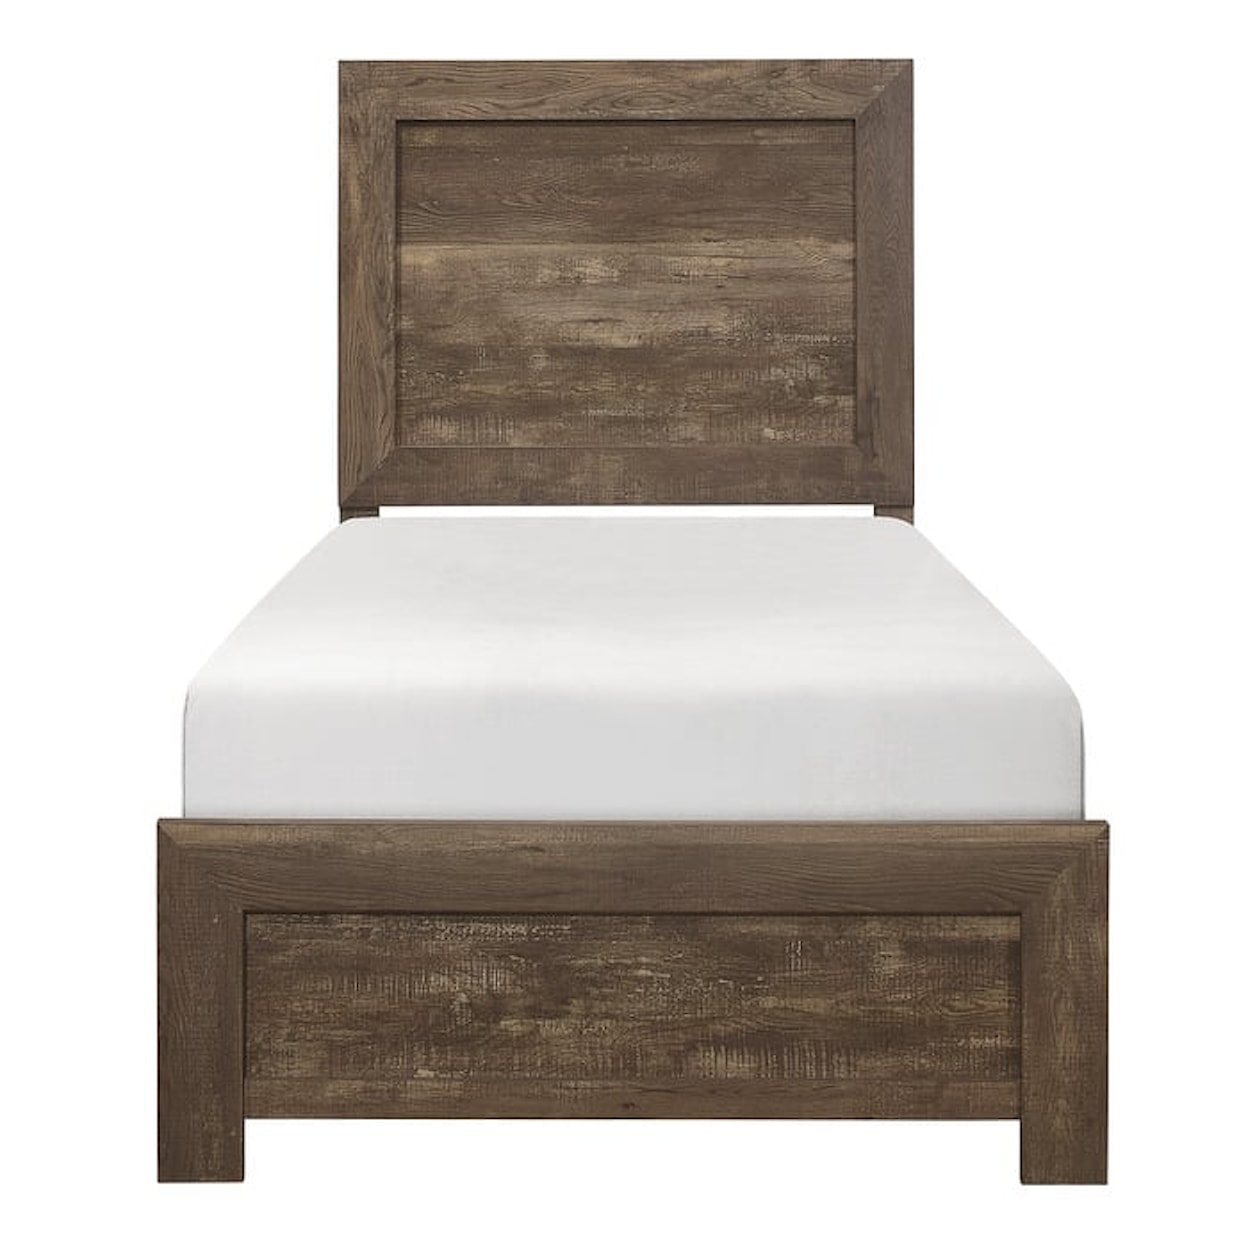 Homelegance Furniture Corbin 4-Piece Twin Bedroom Set